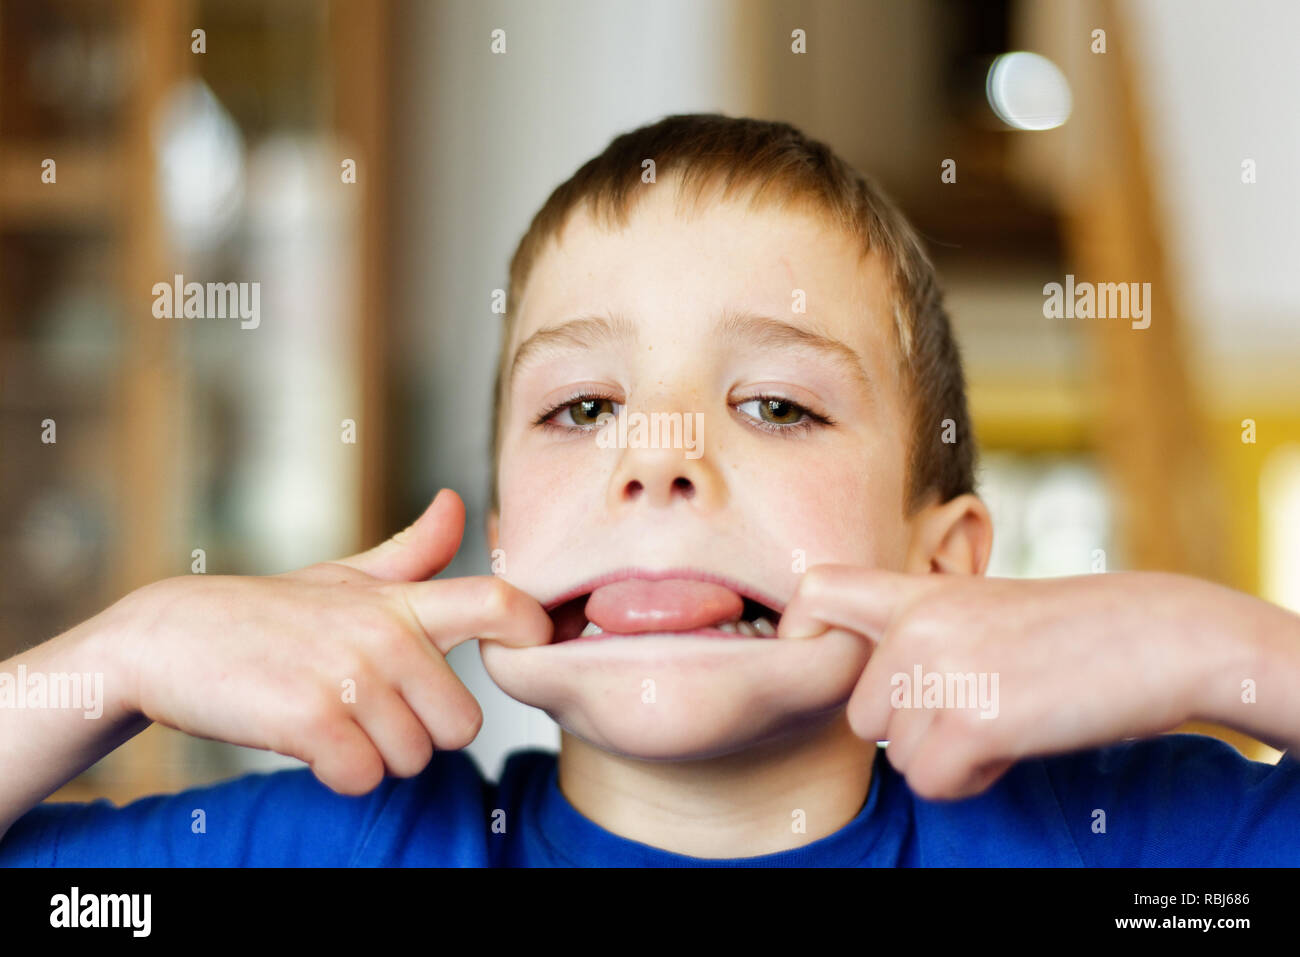 Un joven (6 años) tirando de caras en la cámara Foto de stock